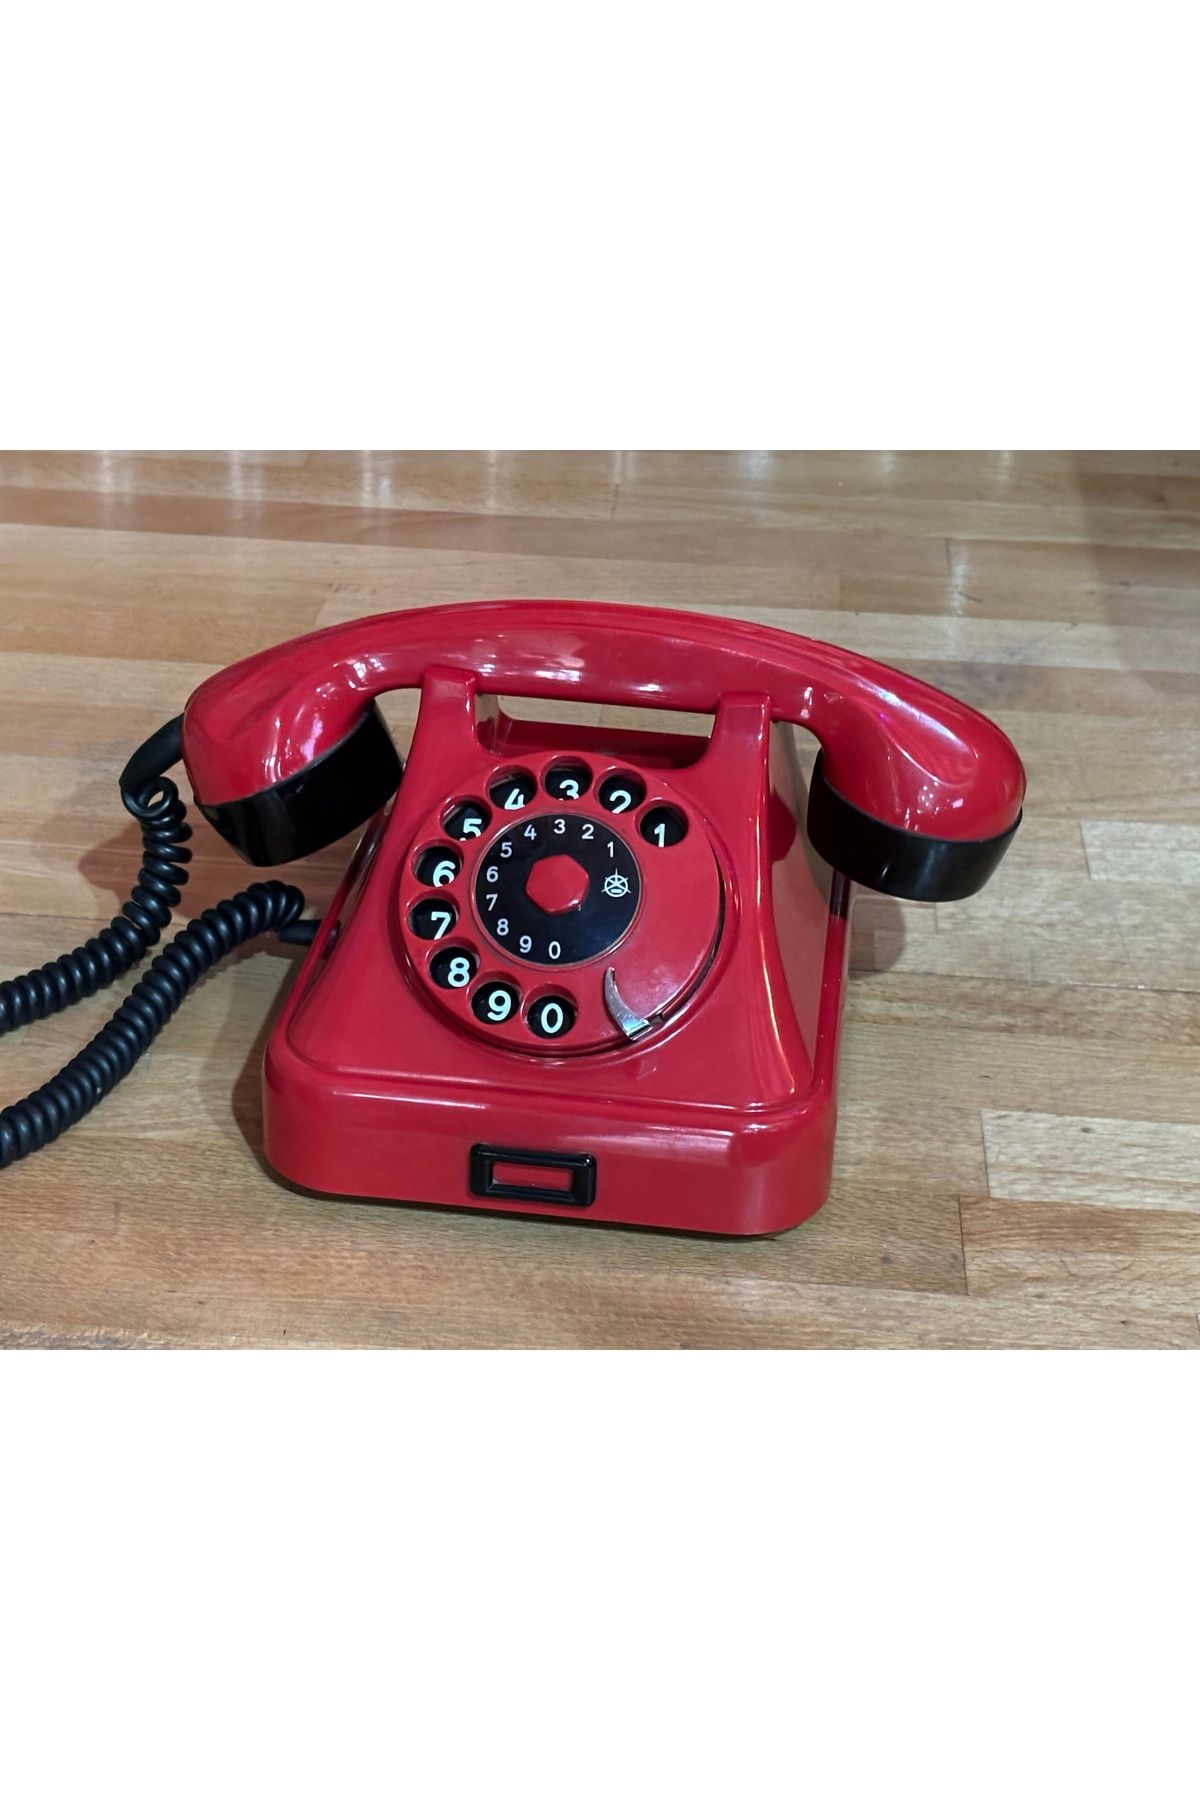 tayfuntufan antika koleksiyon Yugoslavia üretimi çevirmeli telefon - çalışır durumda